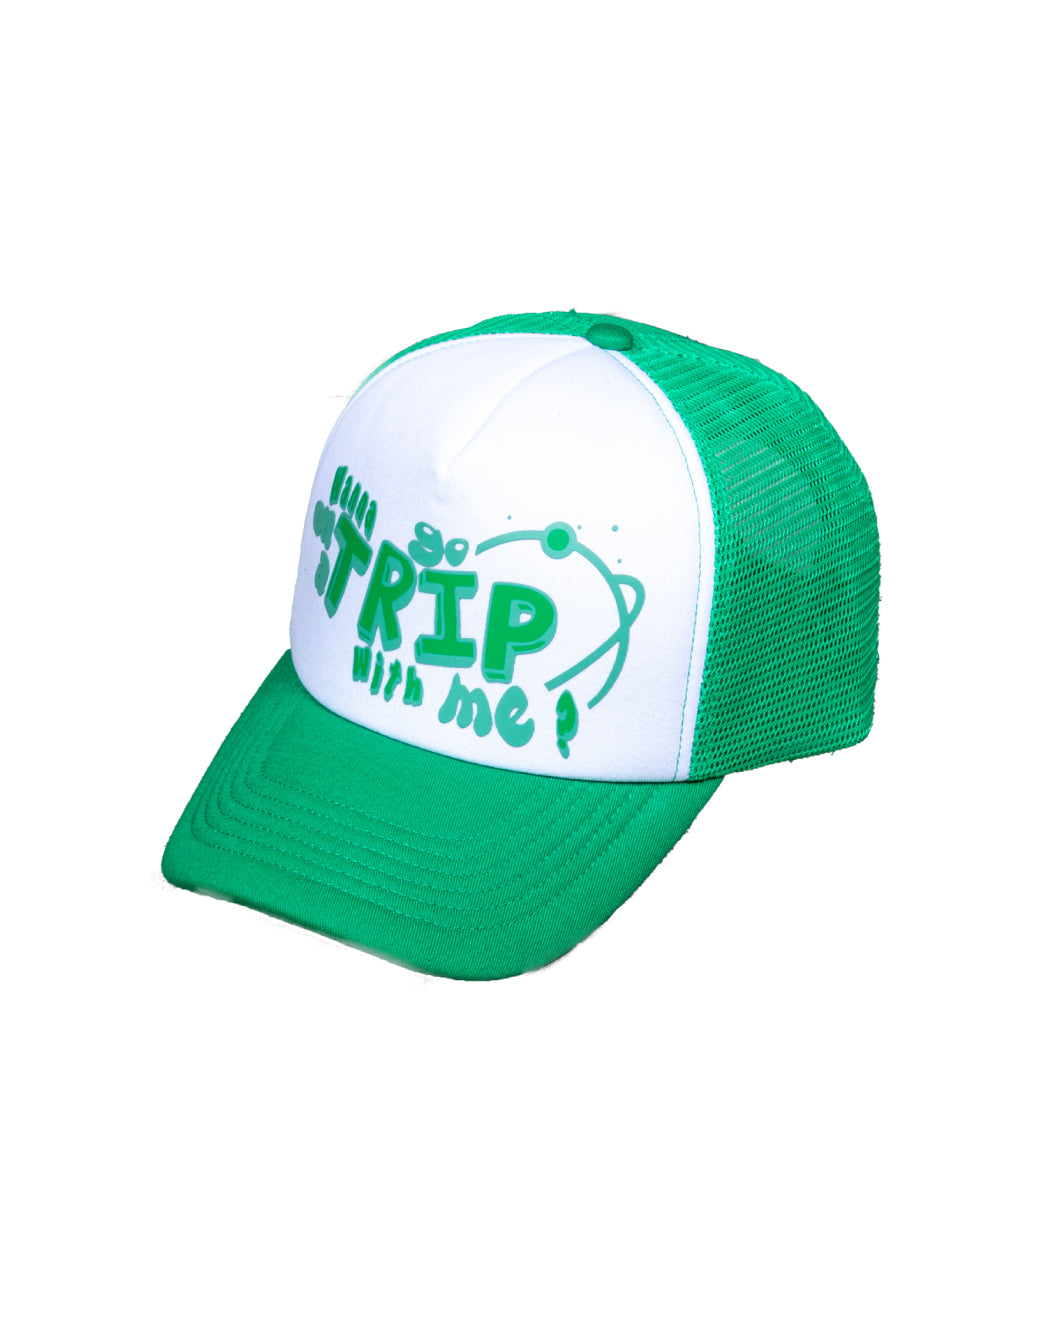 MAMBA CAP - GREEN